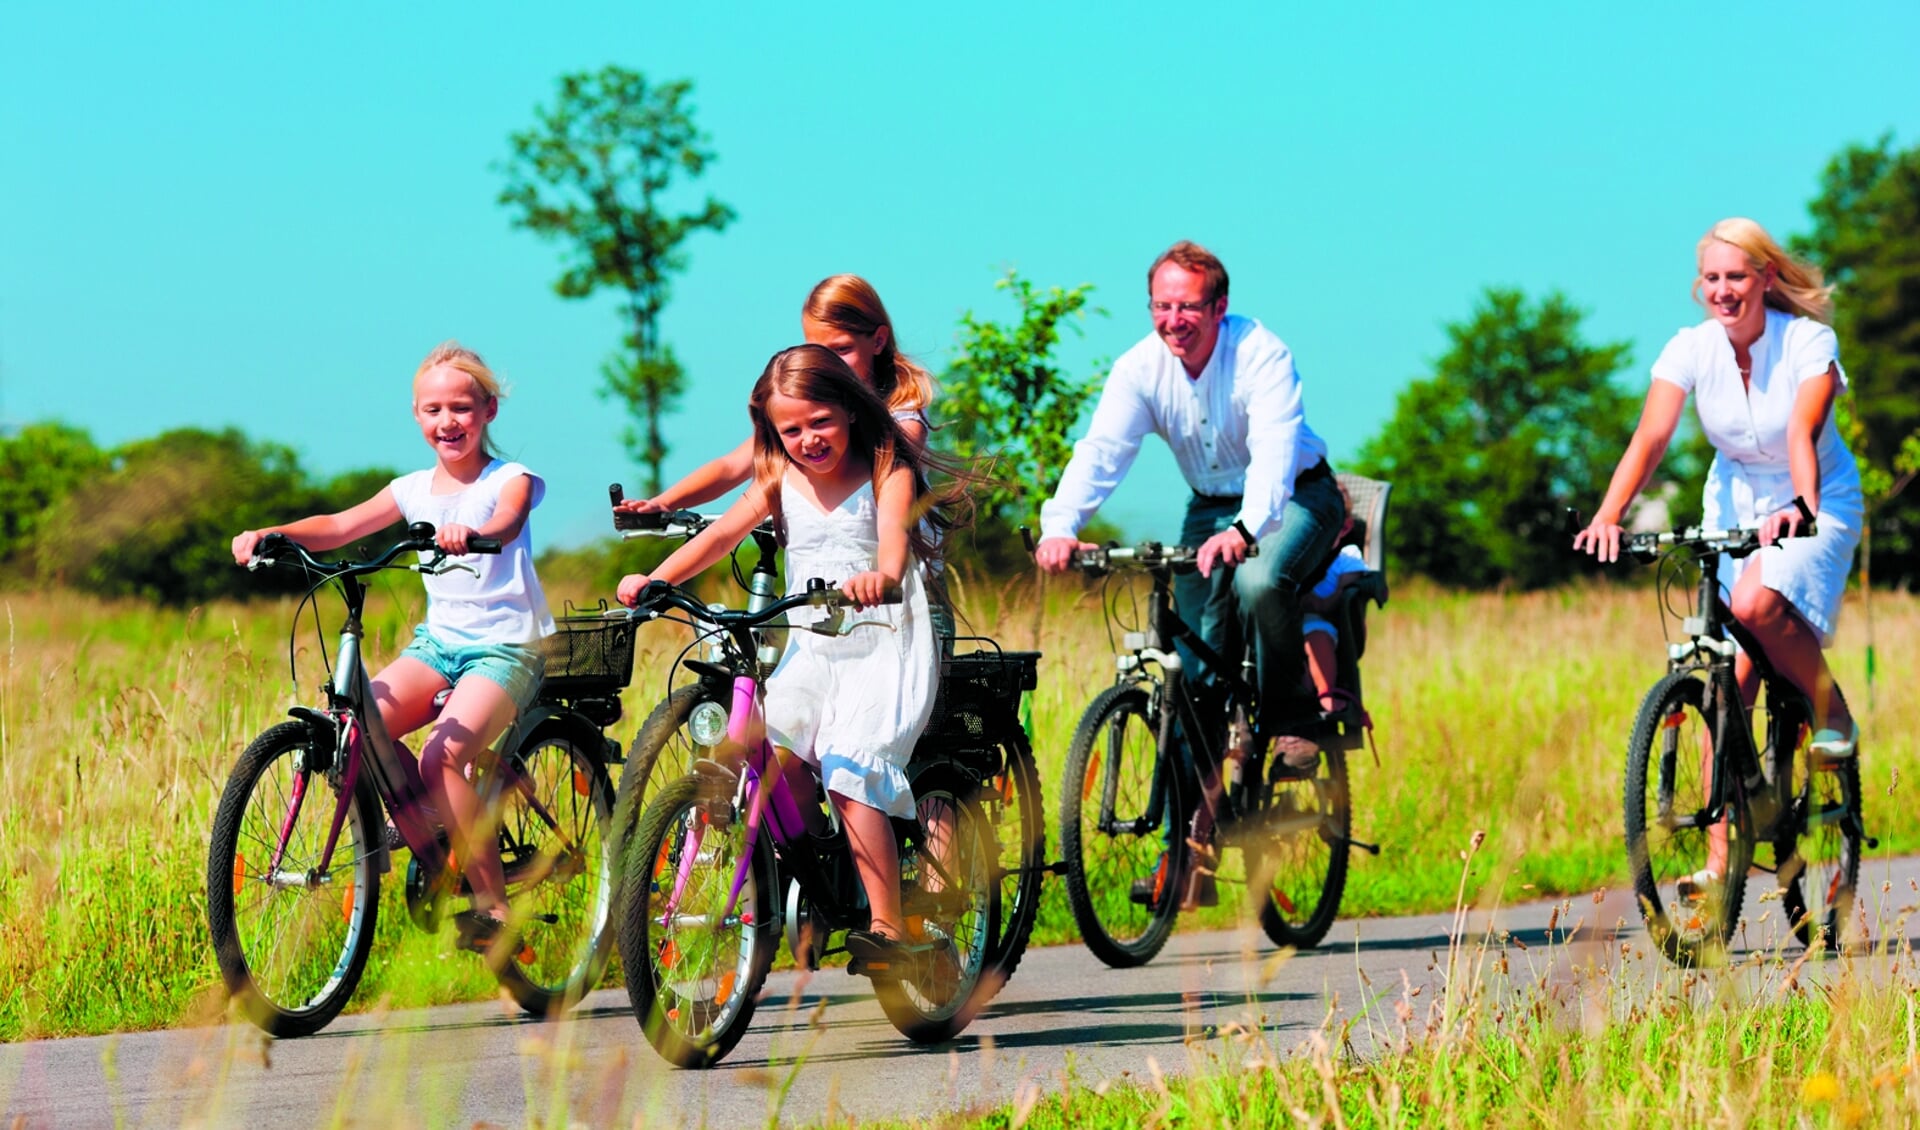 Met het hele gezin West-Friesland verkennen op de fiets.